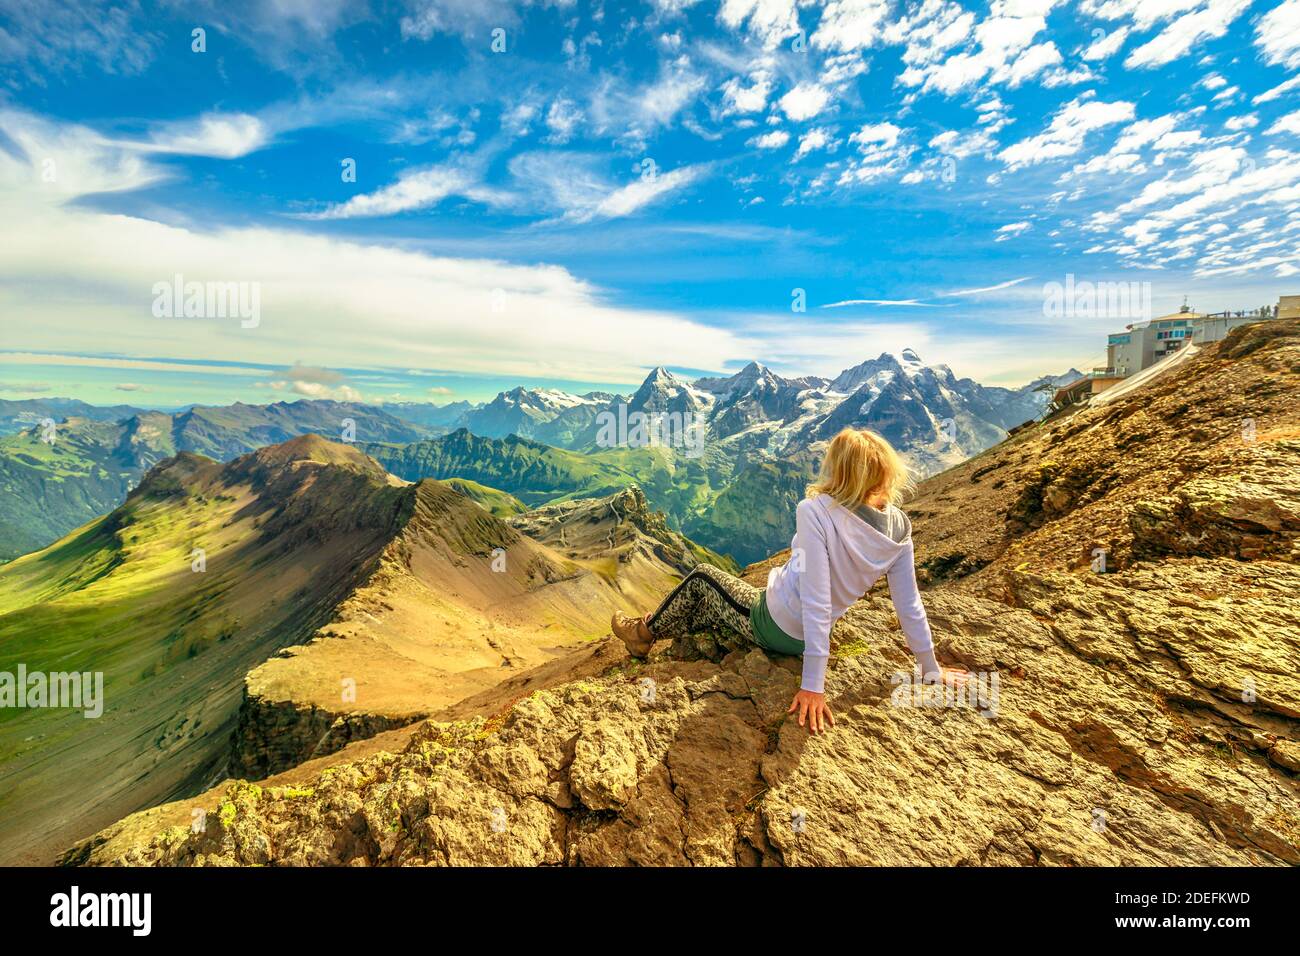 Mujer turística después de hacer senderismo, mirando el increíble panorama 360 grados que rodea 200 picos y Eiger, Monch y Jungfrau picos desde el punto de vista Schilthorn Foto de stock